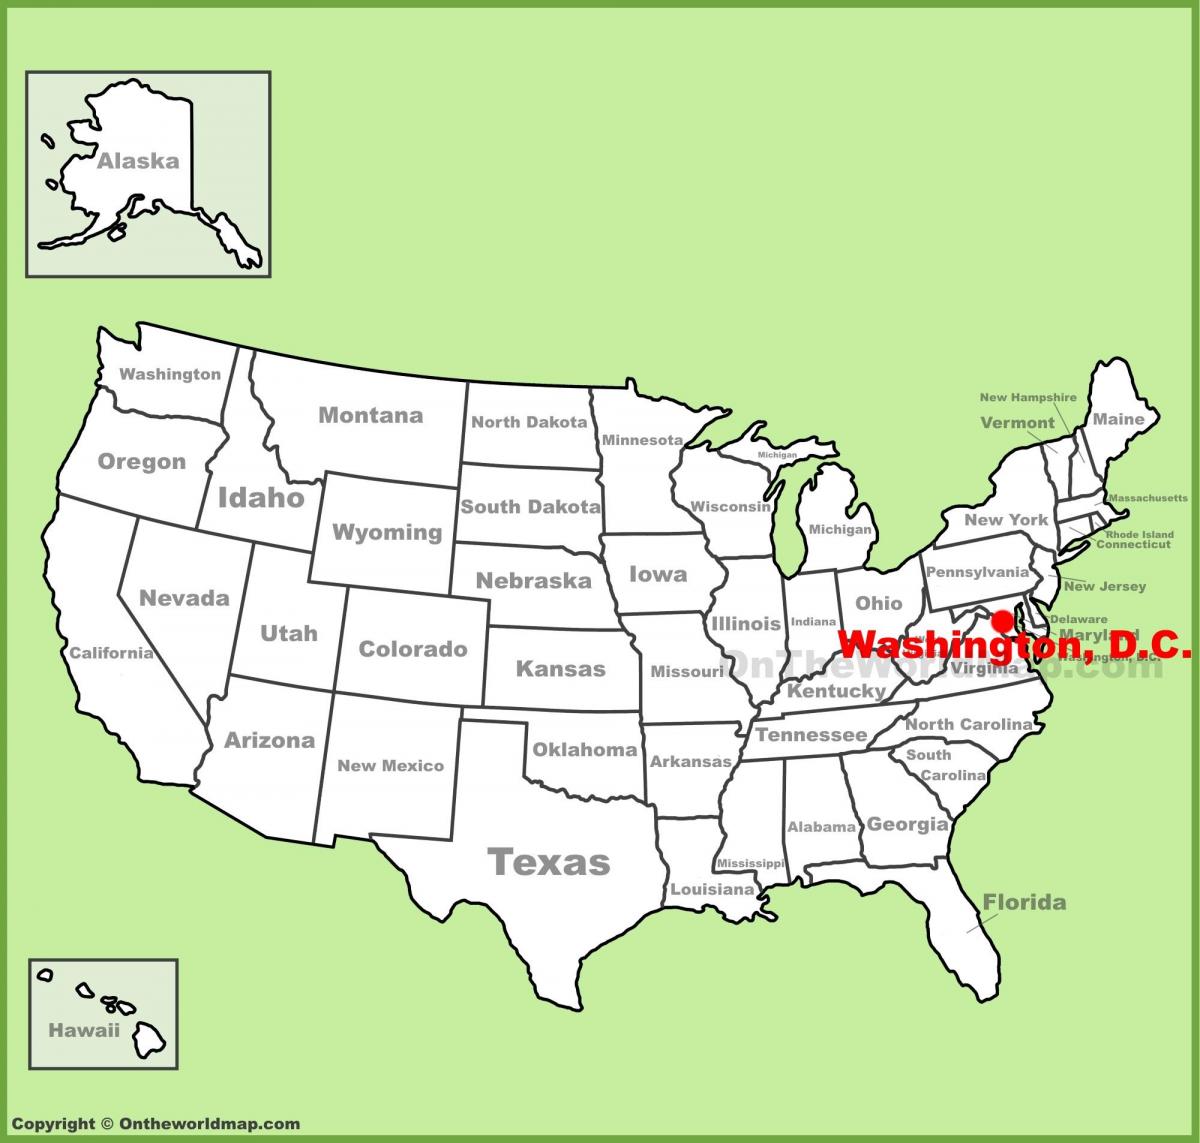 washington dc localizado mapa dos estados unidos